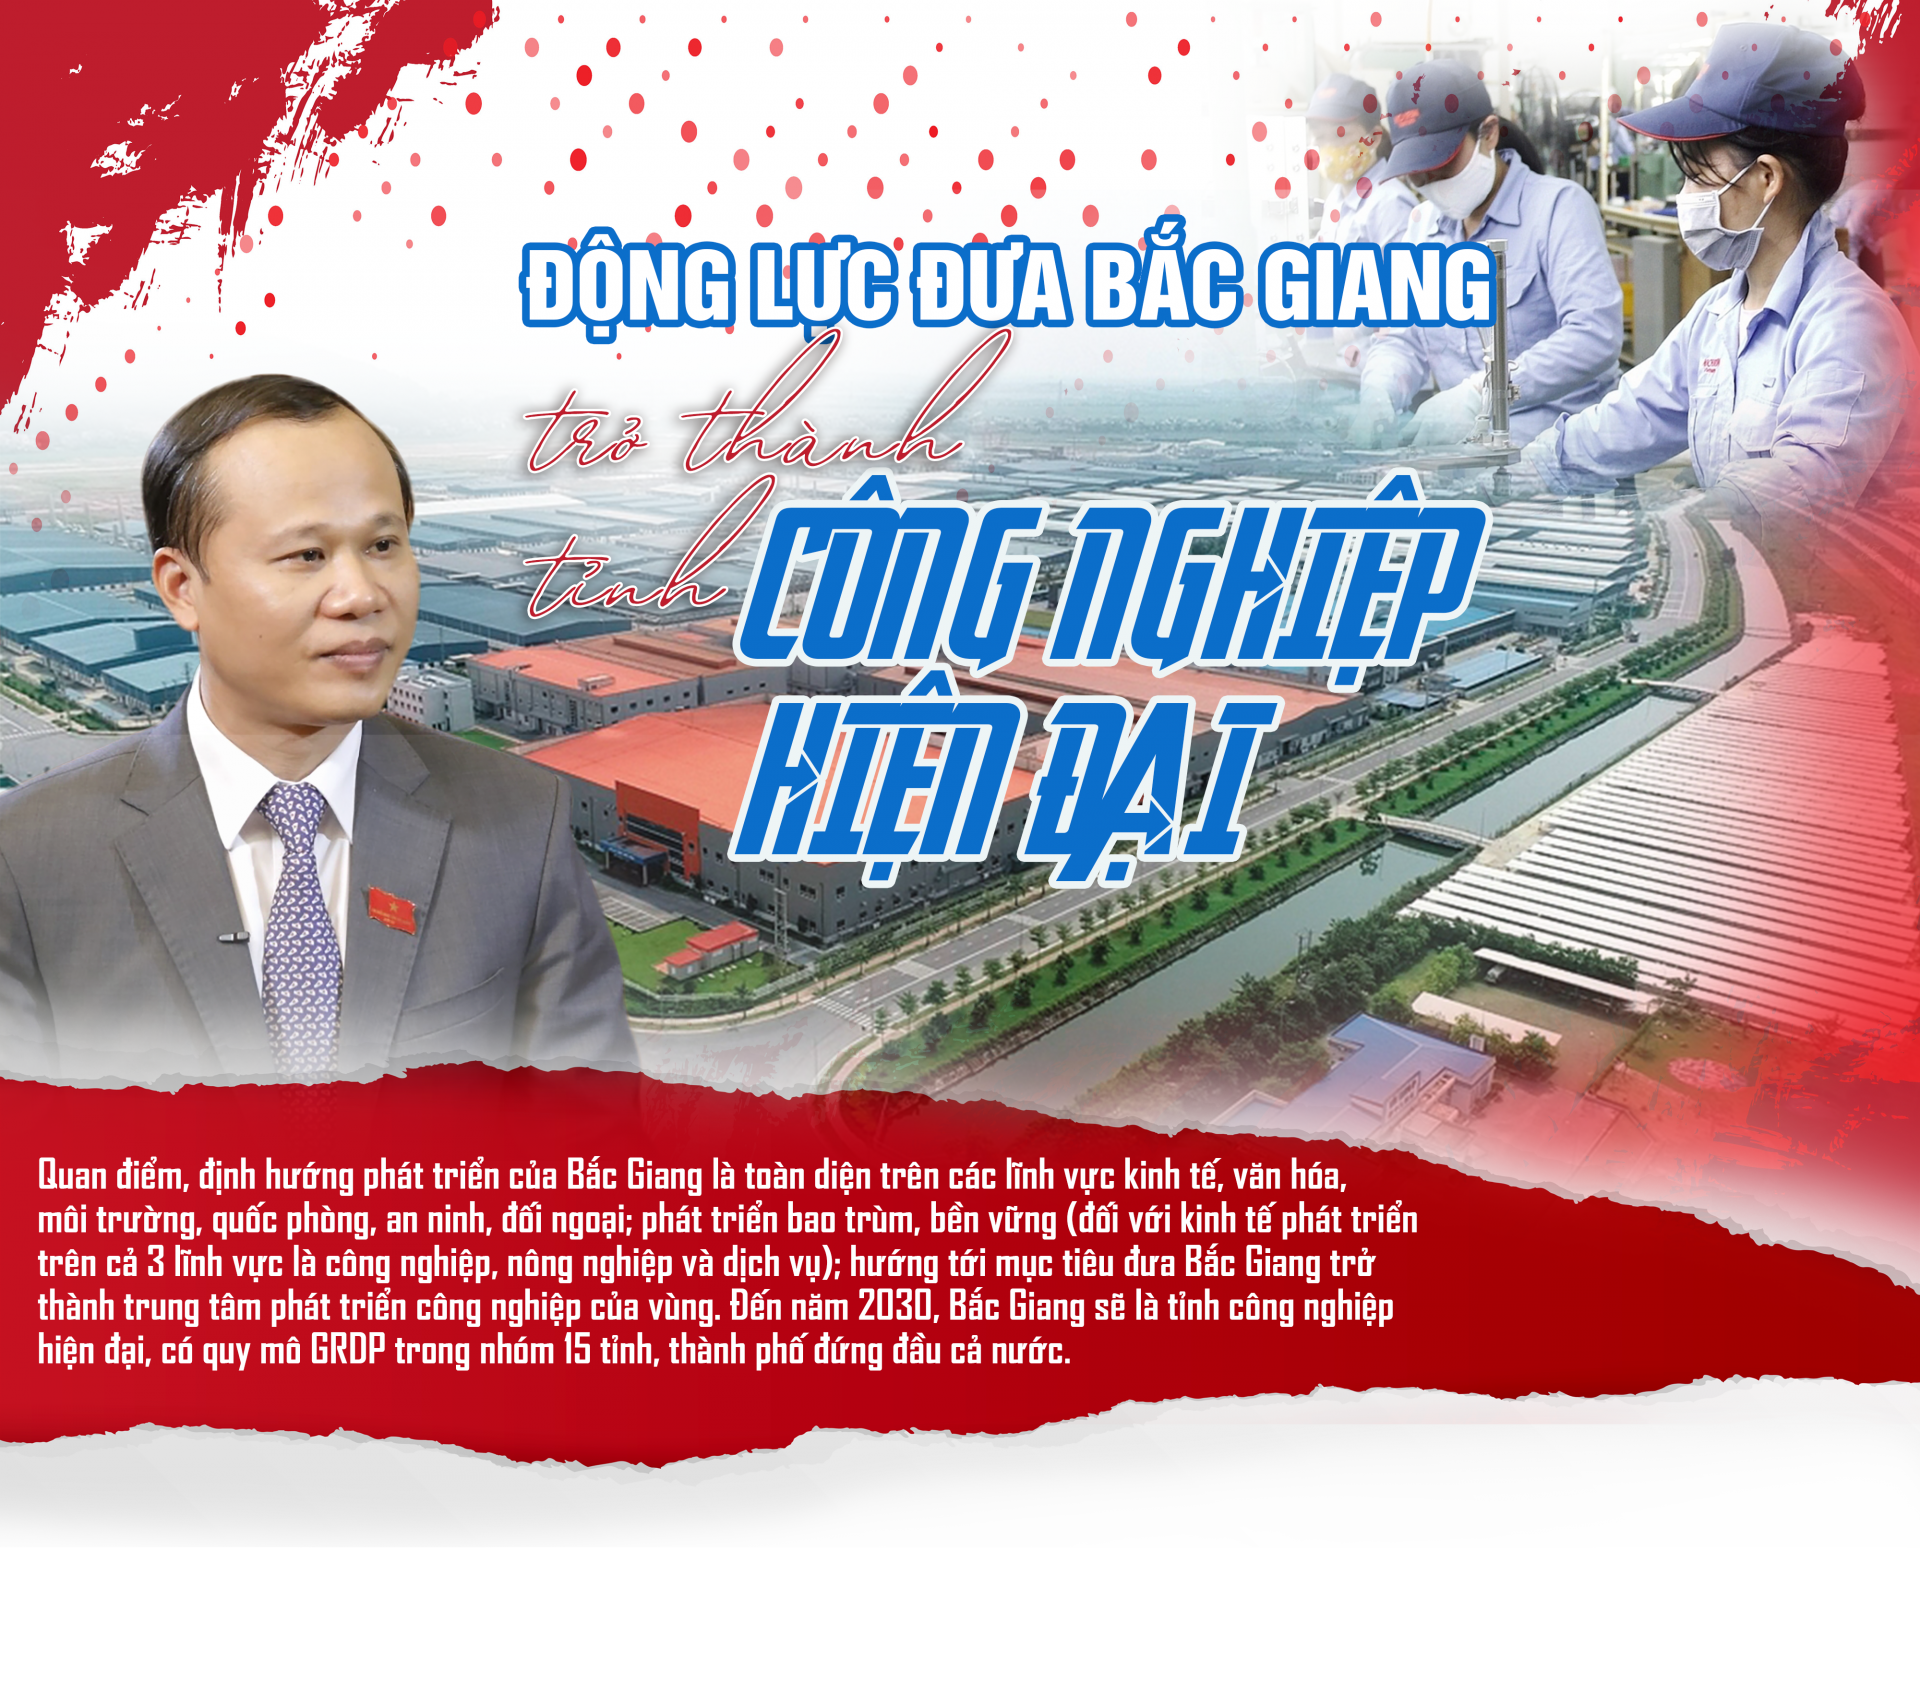 Động lực đưa Bắc Giang trở thành tỉnh công nghiệp hiện đại